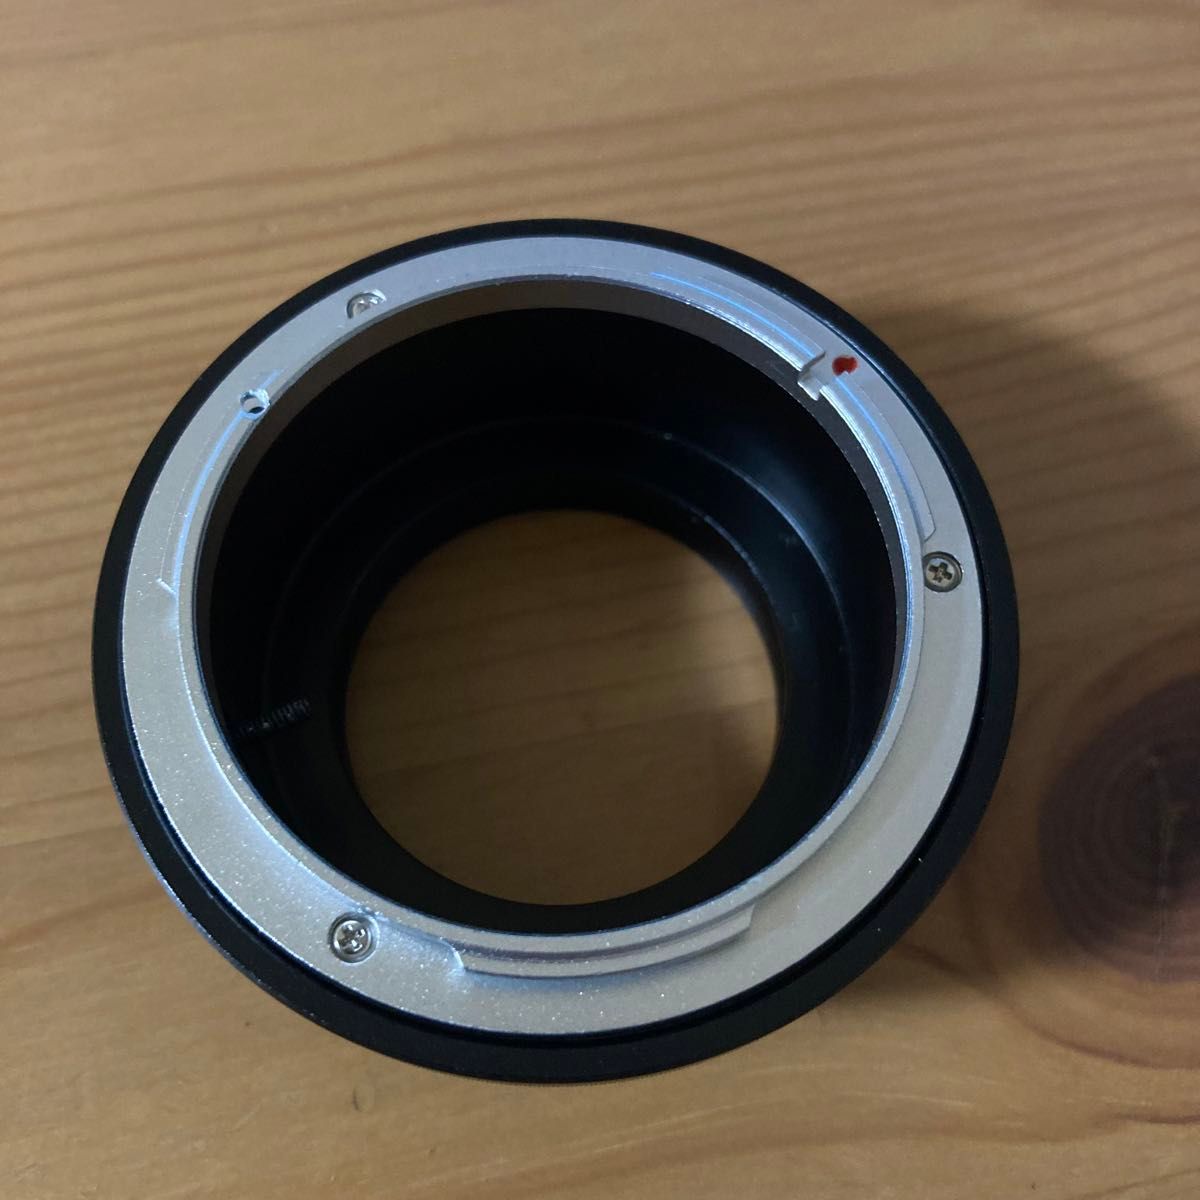 FD-FX レンズマウントアダプター